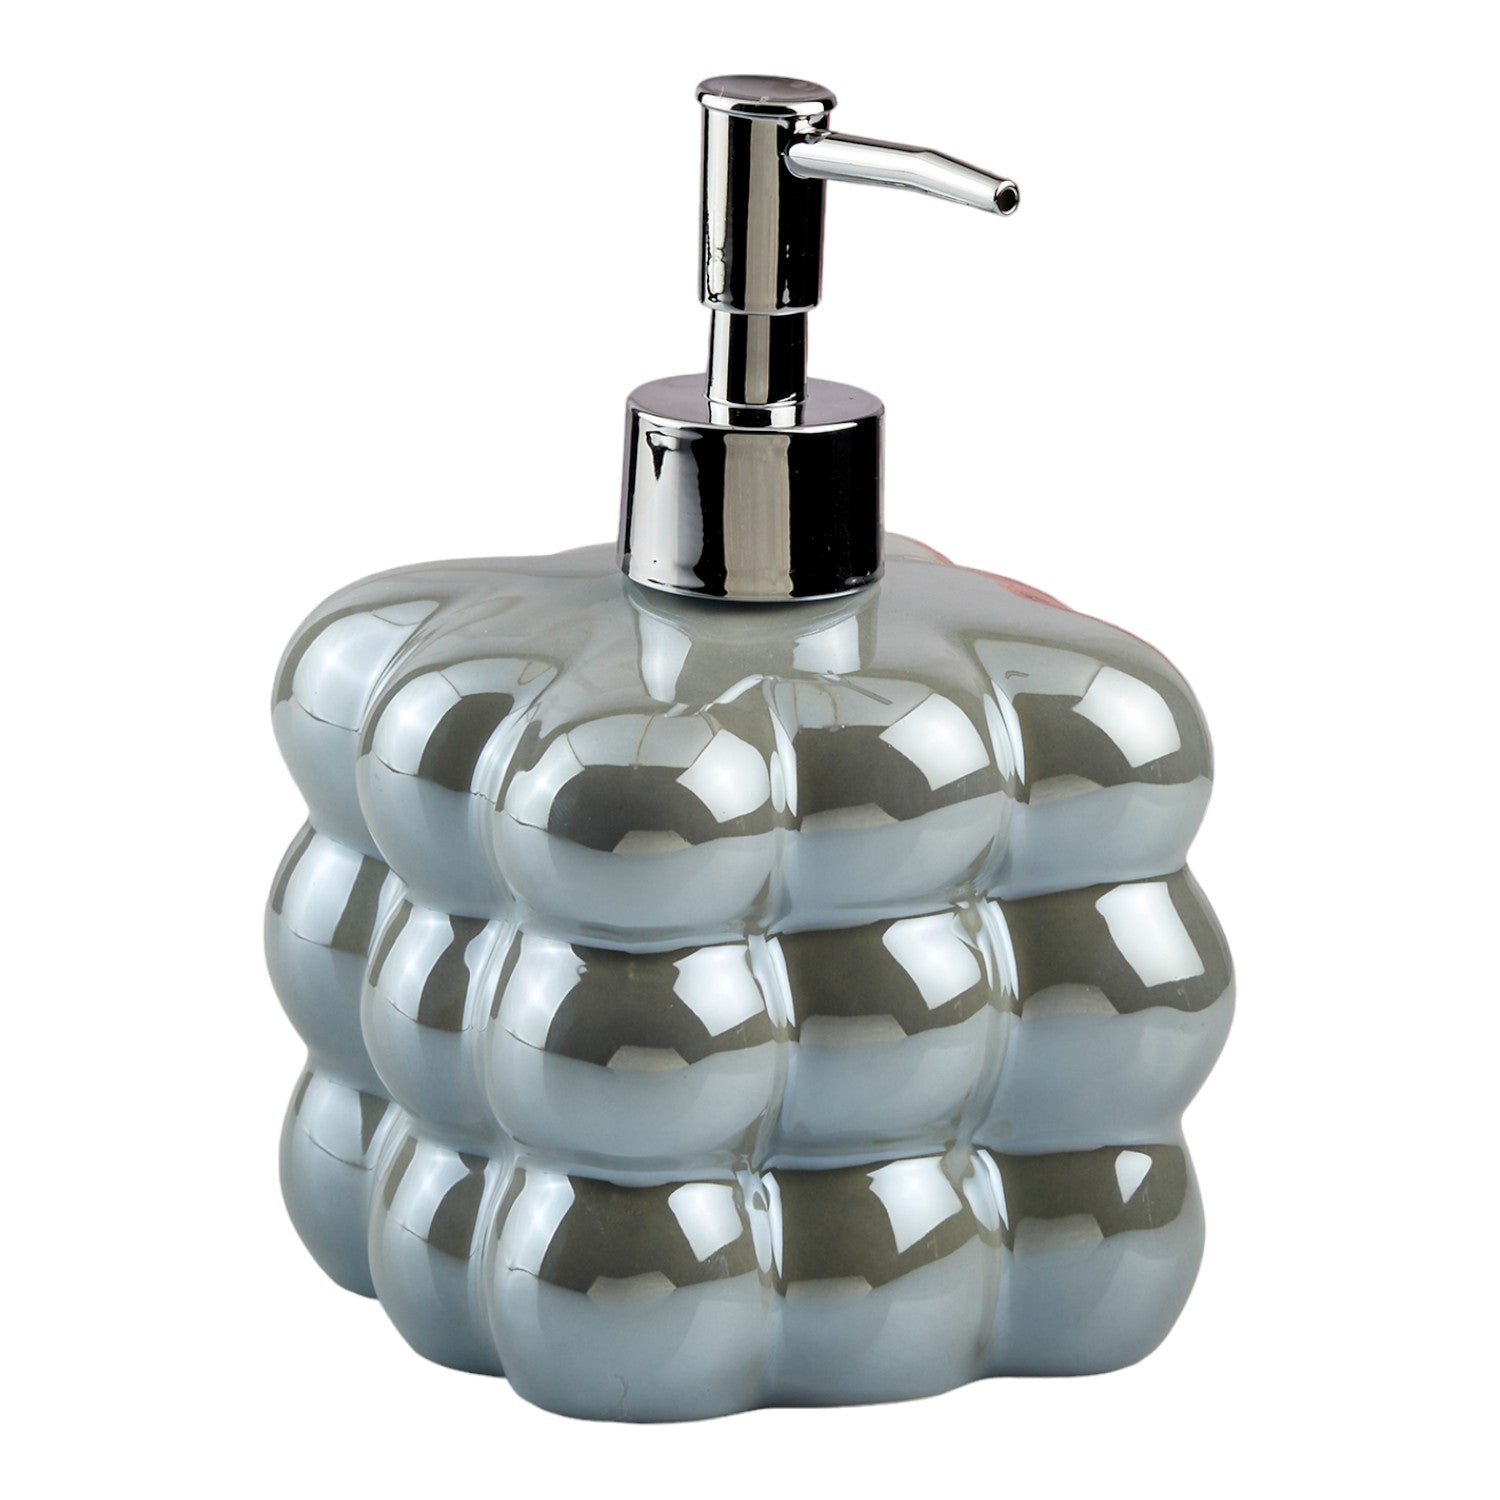 Ceramic Soap Dispenser liquid handwash pump for Bathroom, Set of 1, Beige (10610)